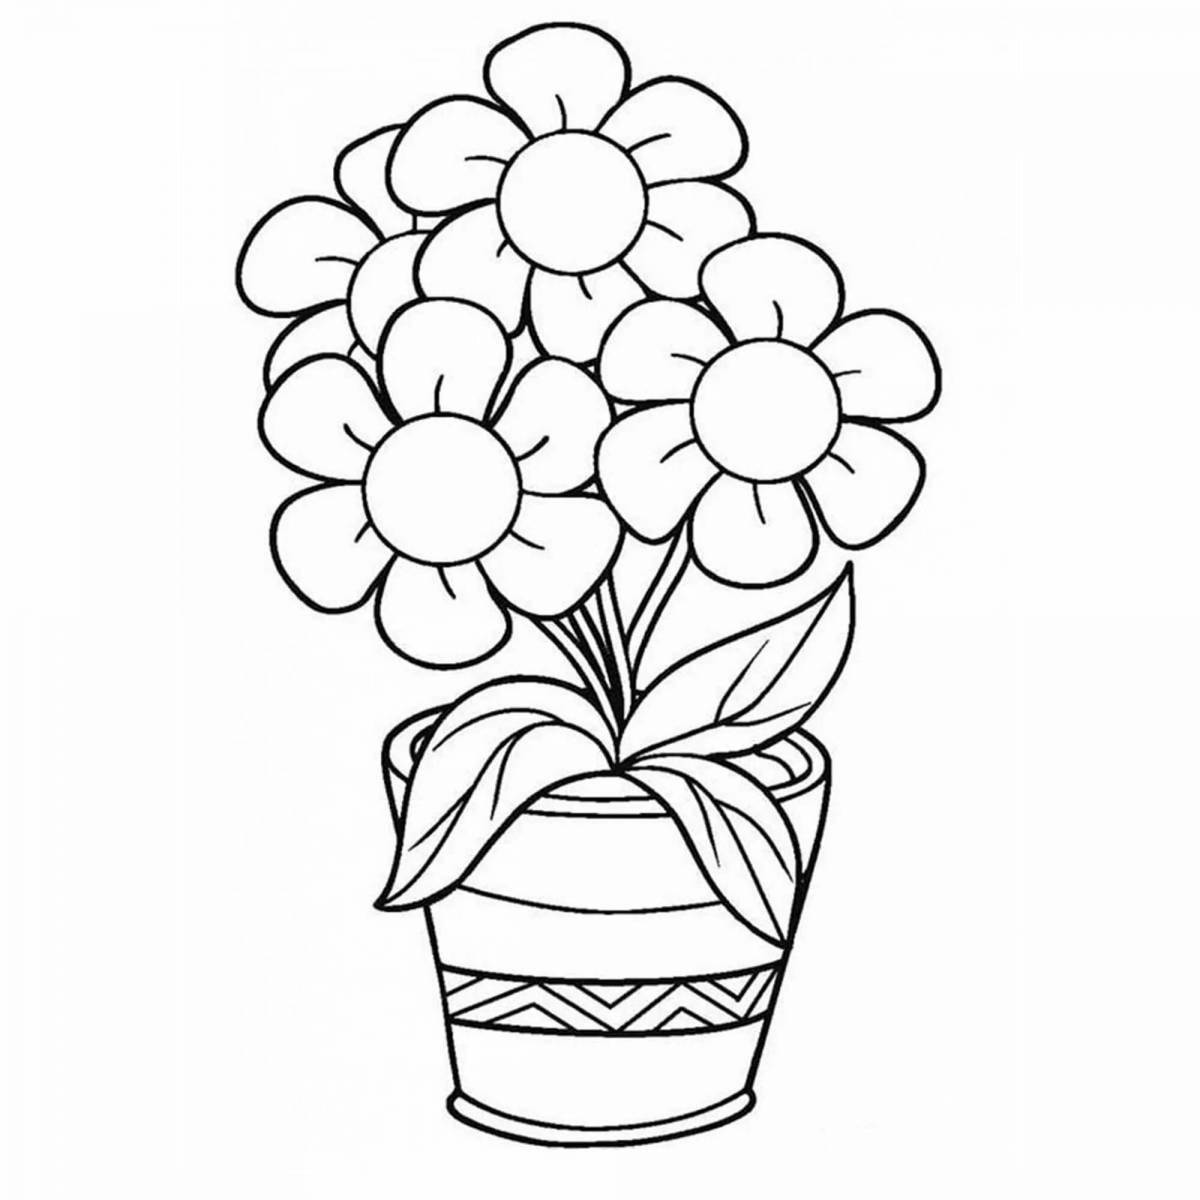 Раскраска игривый букет цветов в вазе